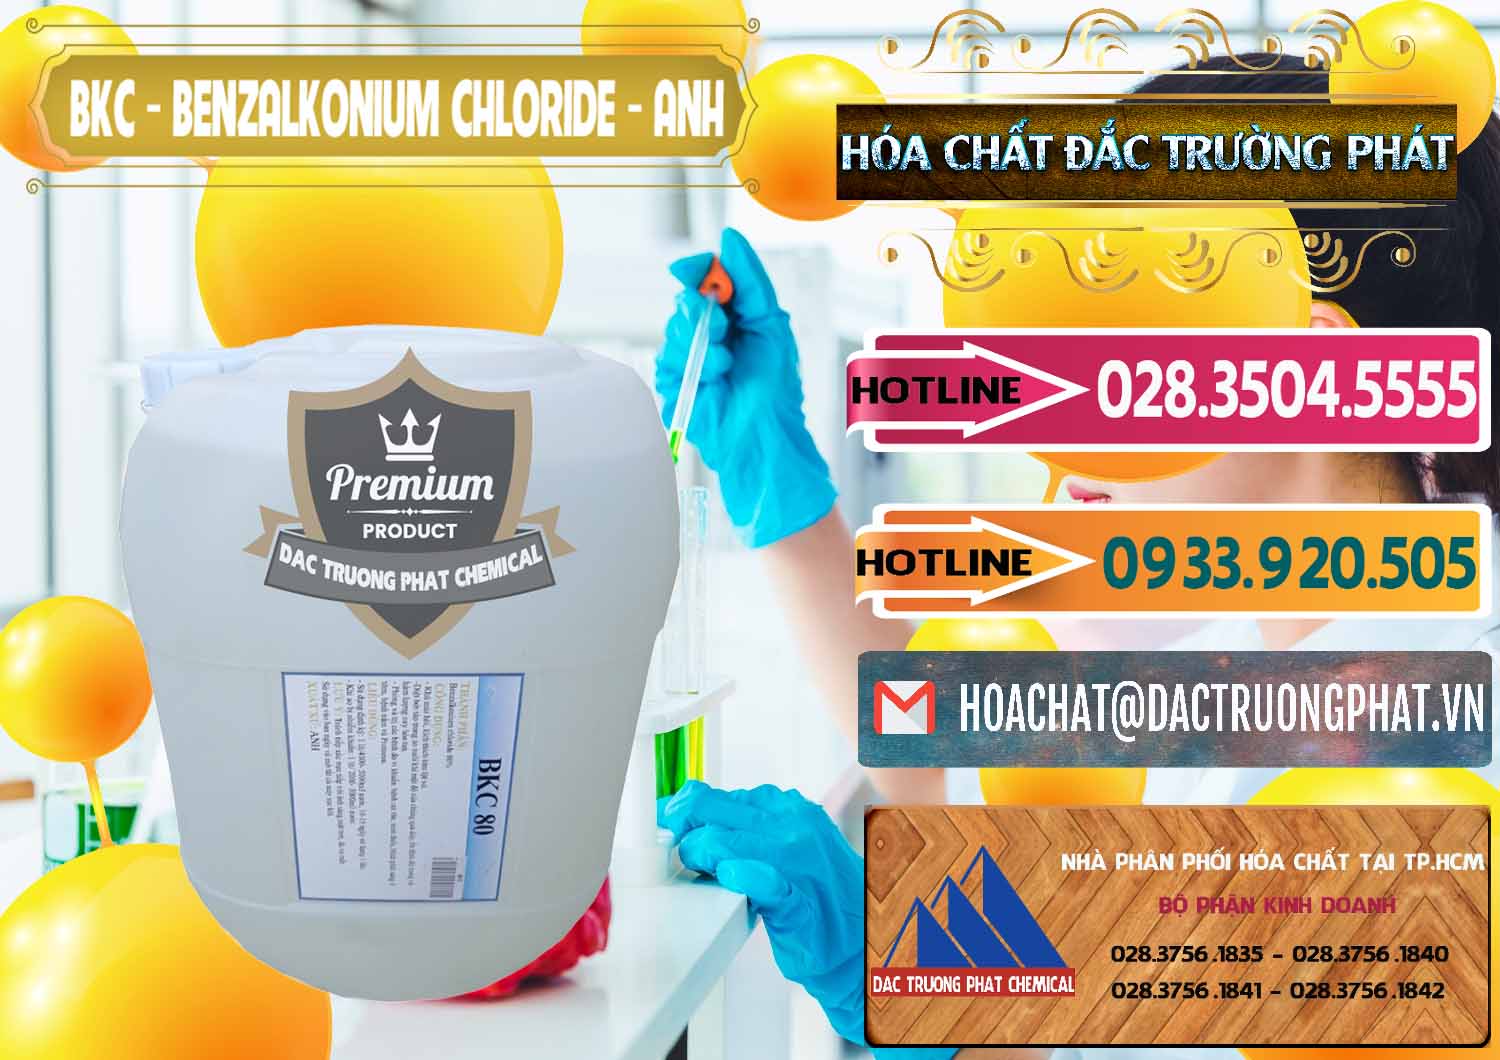 Công ty chuyên bán ( phân phối ) BKC - Benzalkonium Chloride Anh Quốc Uk Kingdoms - 0415 - Nơi phân phối - nhập khẩu hóa chất tại TP.HCM - dactruongphat.vn